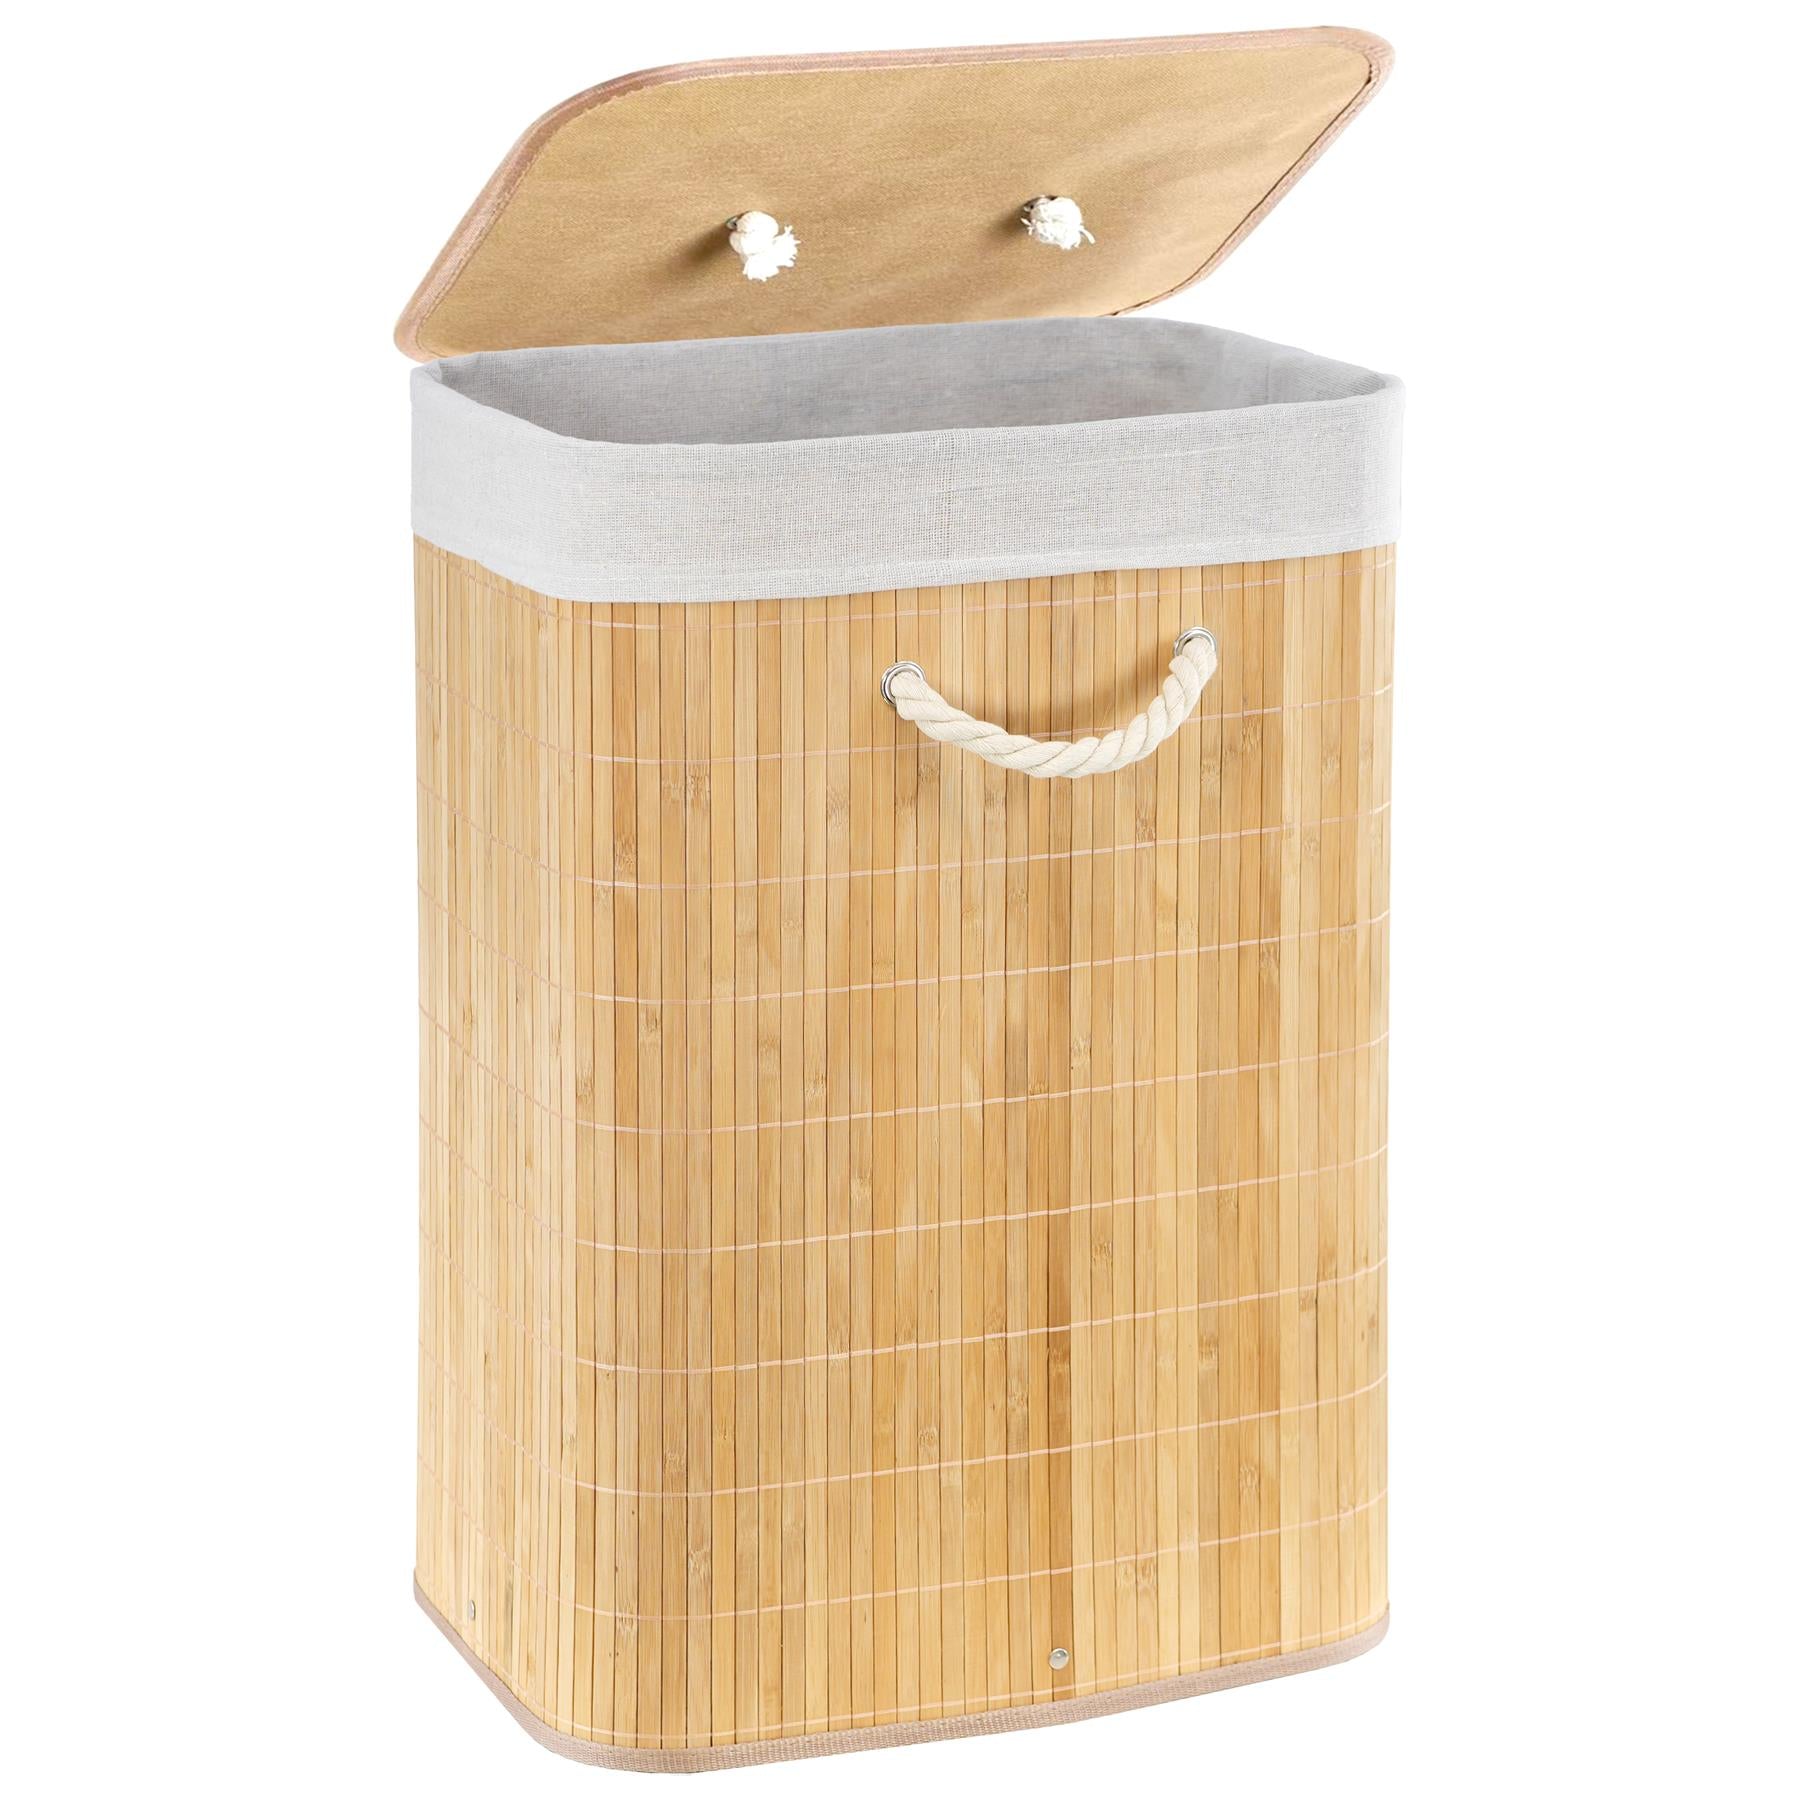 GEEZY Rectangular Bamboo Basket Natural